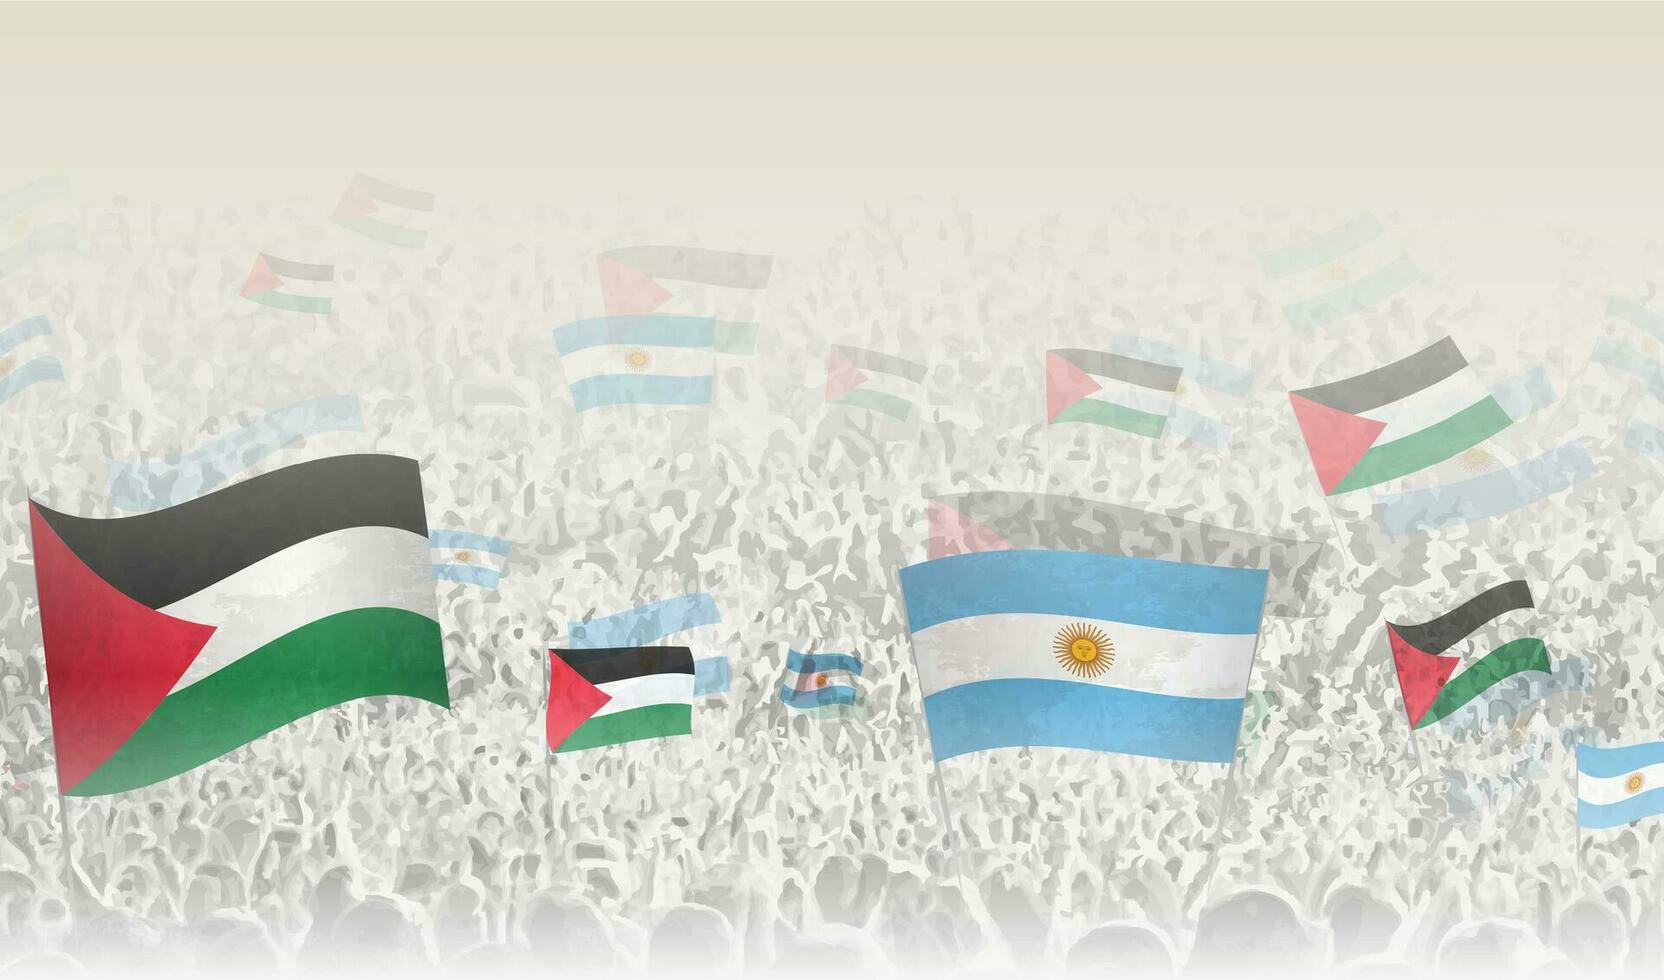 palestina och argentina flaggor i en folkmassan av glädjande människor. vektor